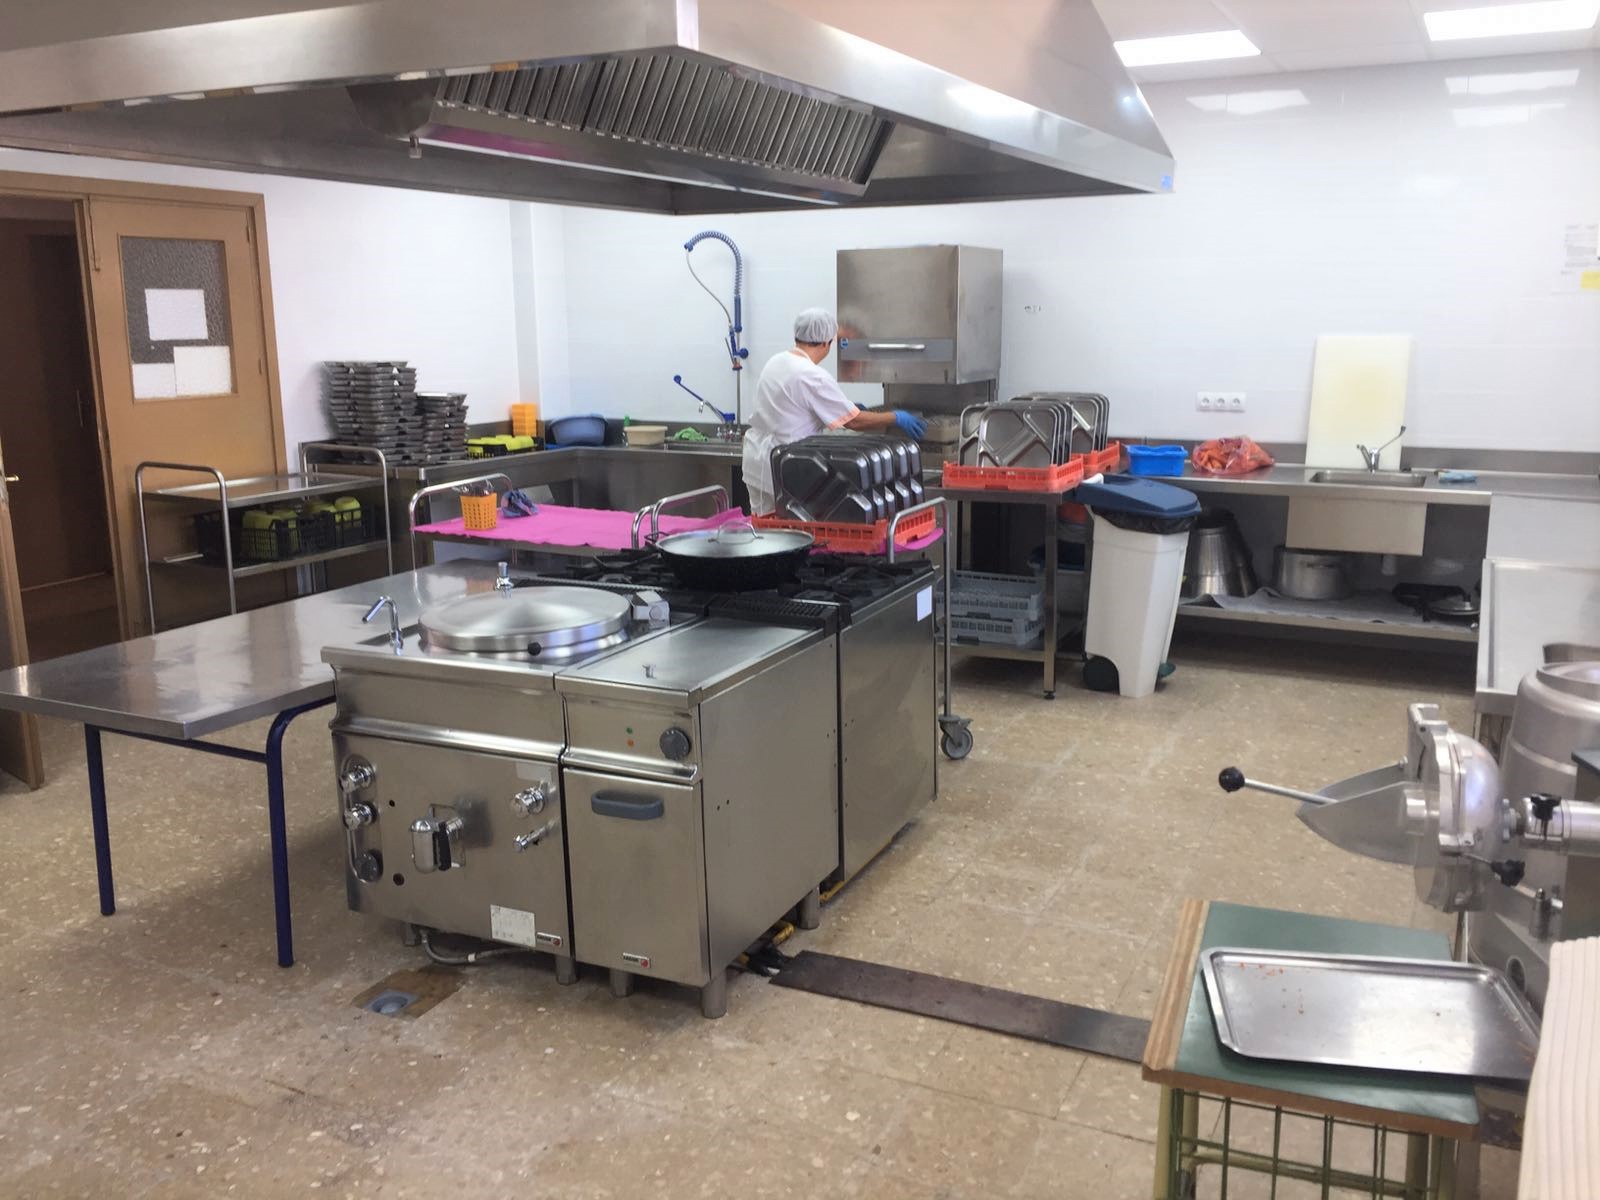 S’inaugura la nova cuina escolar al CEIP José Mollà